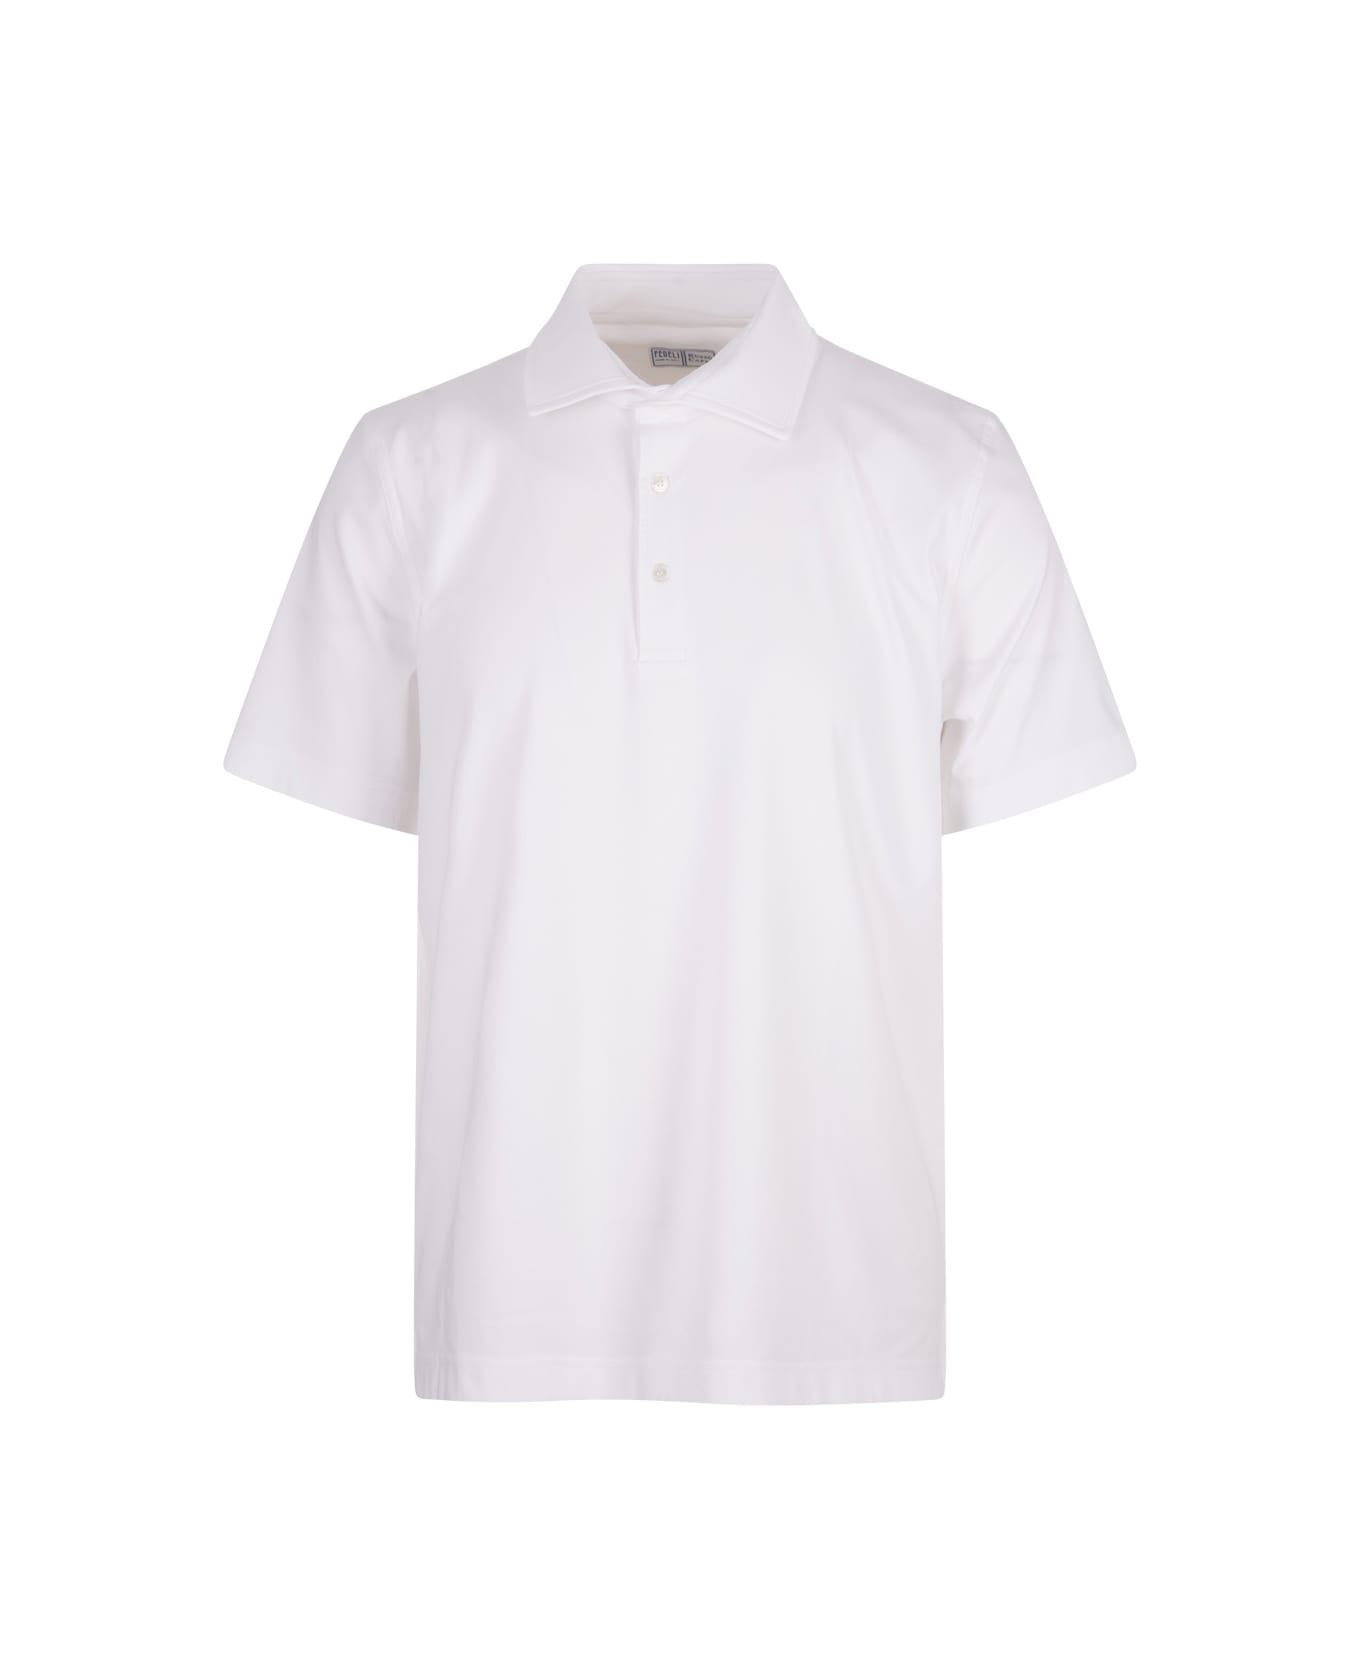 Fedeli White Tecno Jersey Polo Shirt - White ポロシャツ